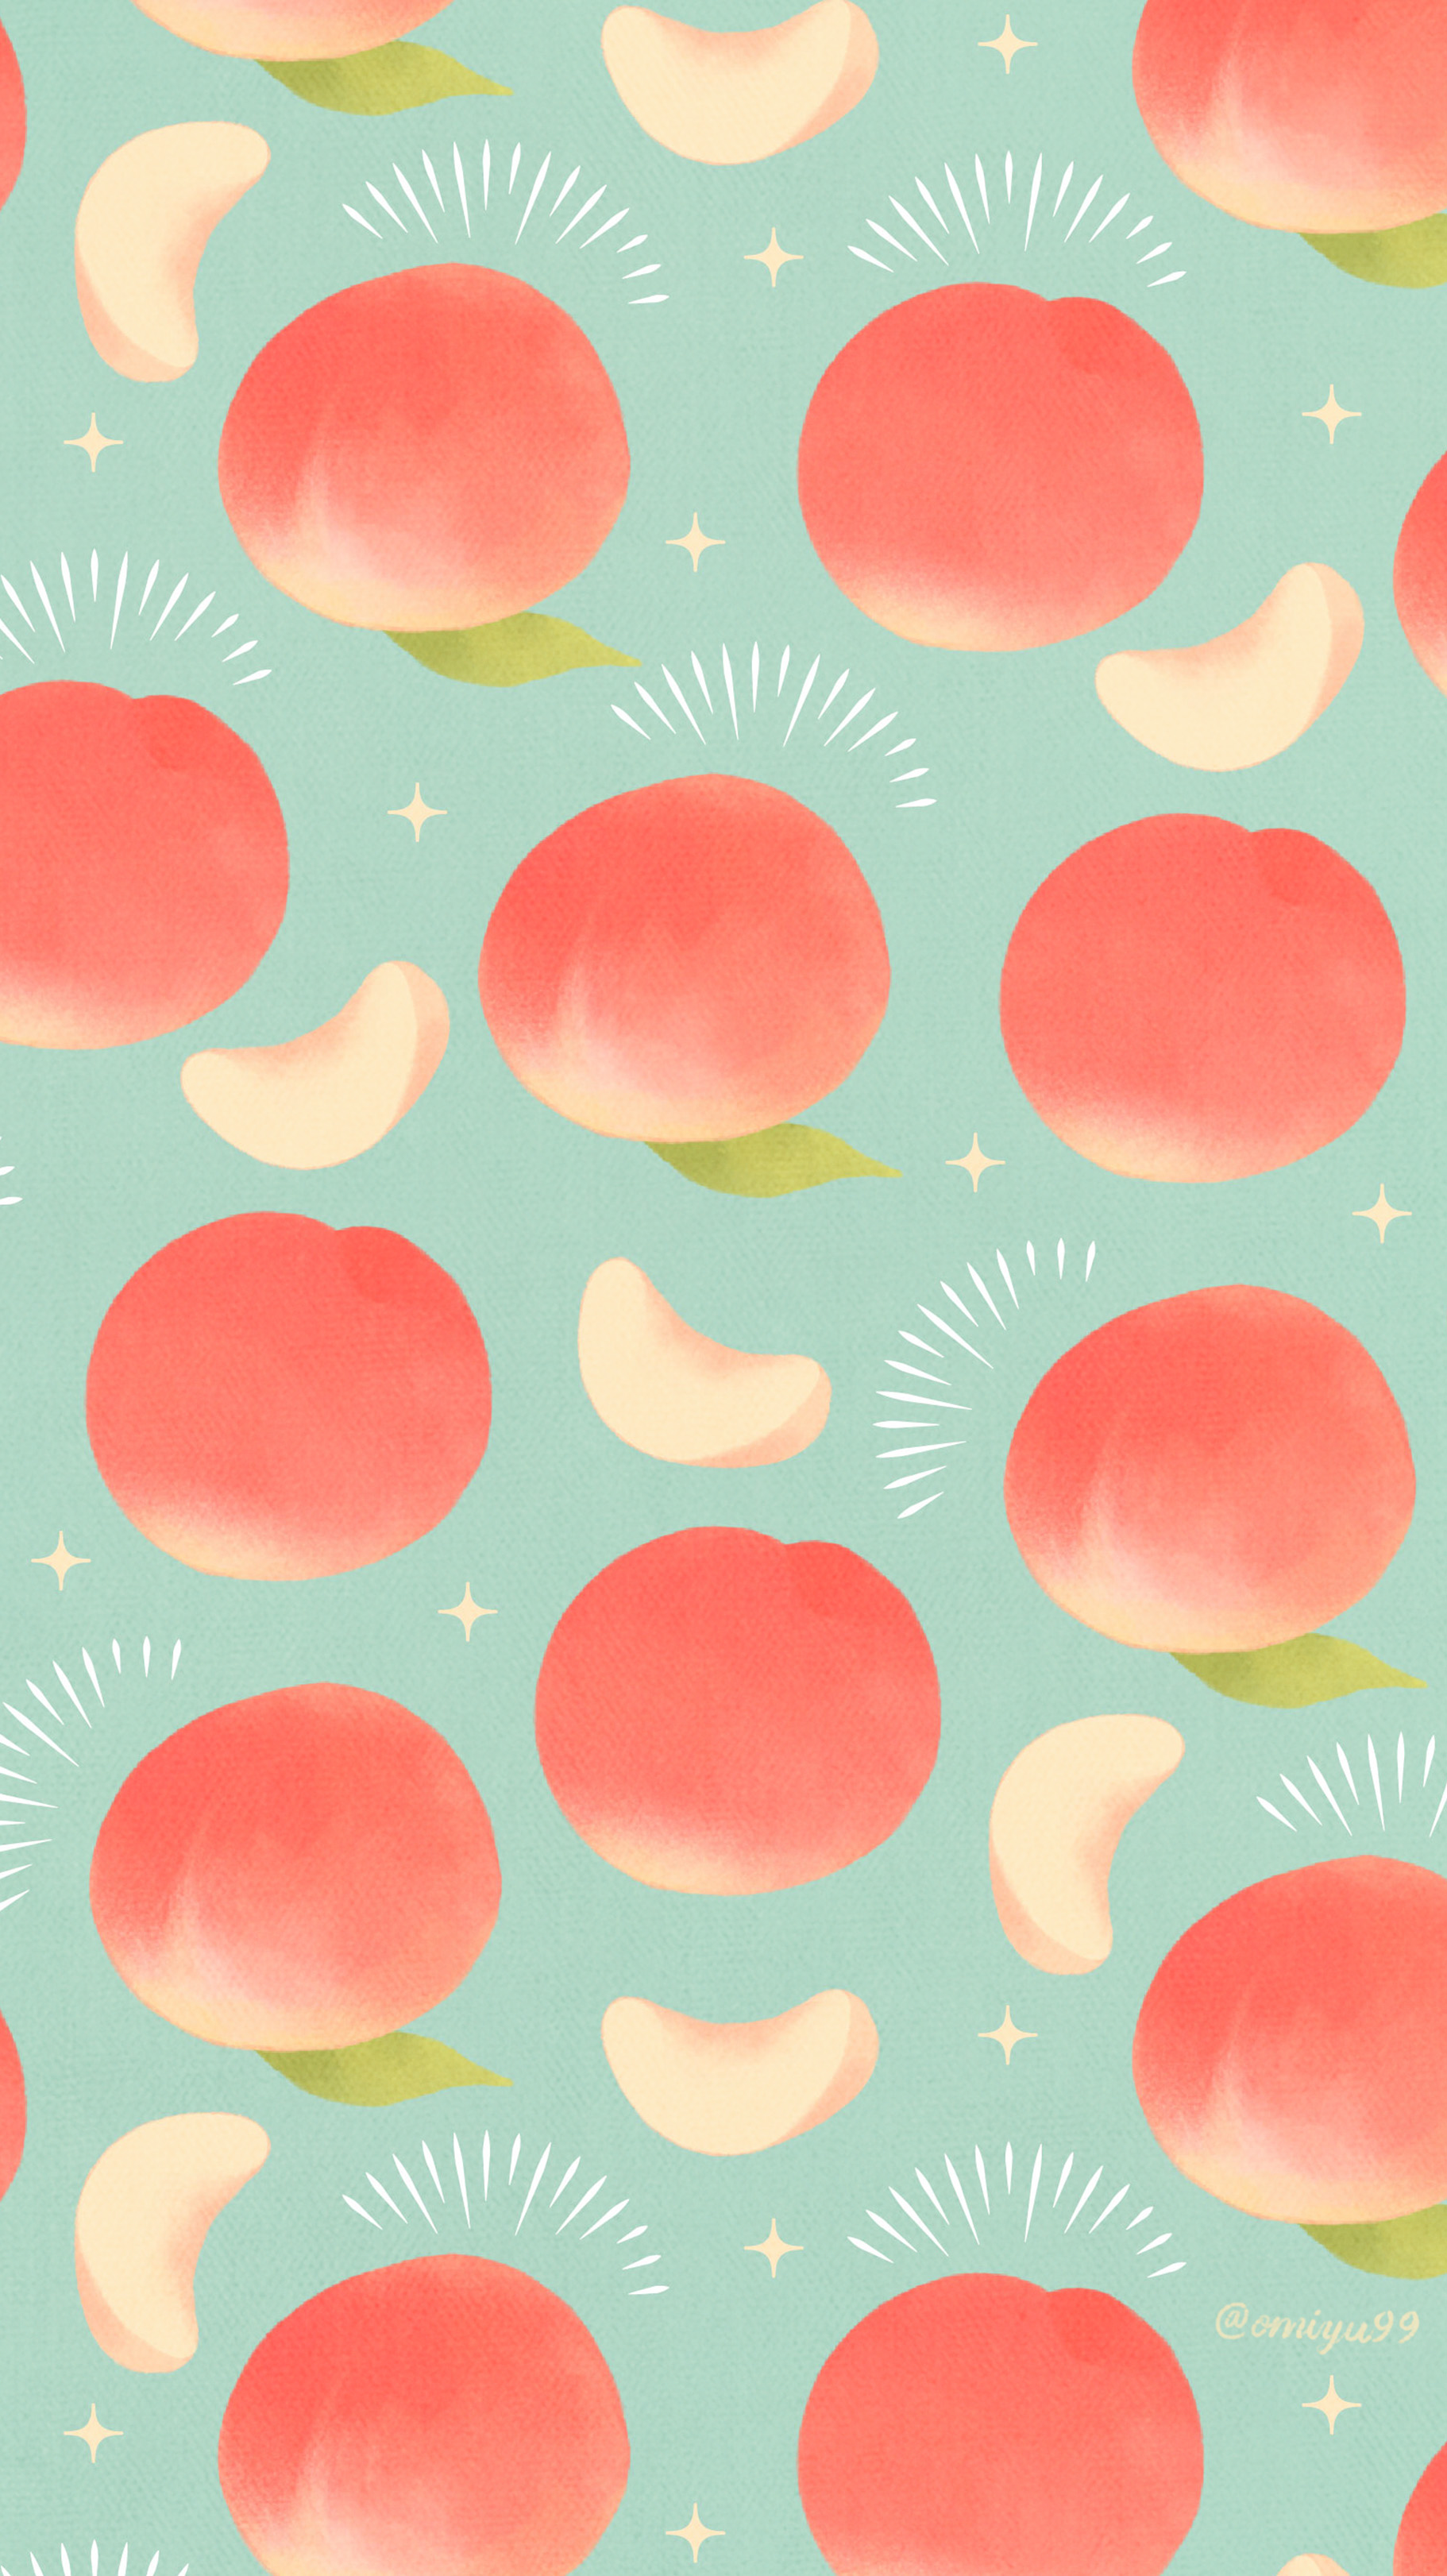 Omiyu お返事遅くなります ピーチな壁紙 Illust Illustration 壁紙 イラスト Iphone壁紙 桃 Peach 食べ物 T Co 44dcpbdzve Twitter